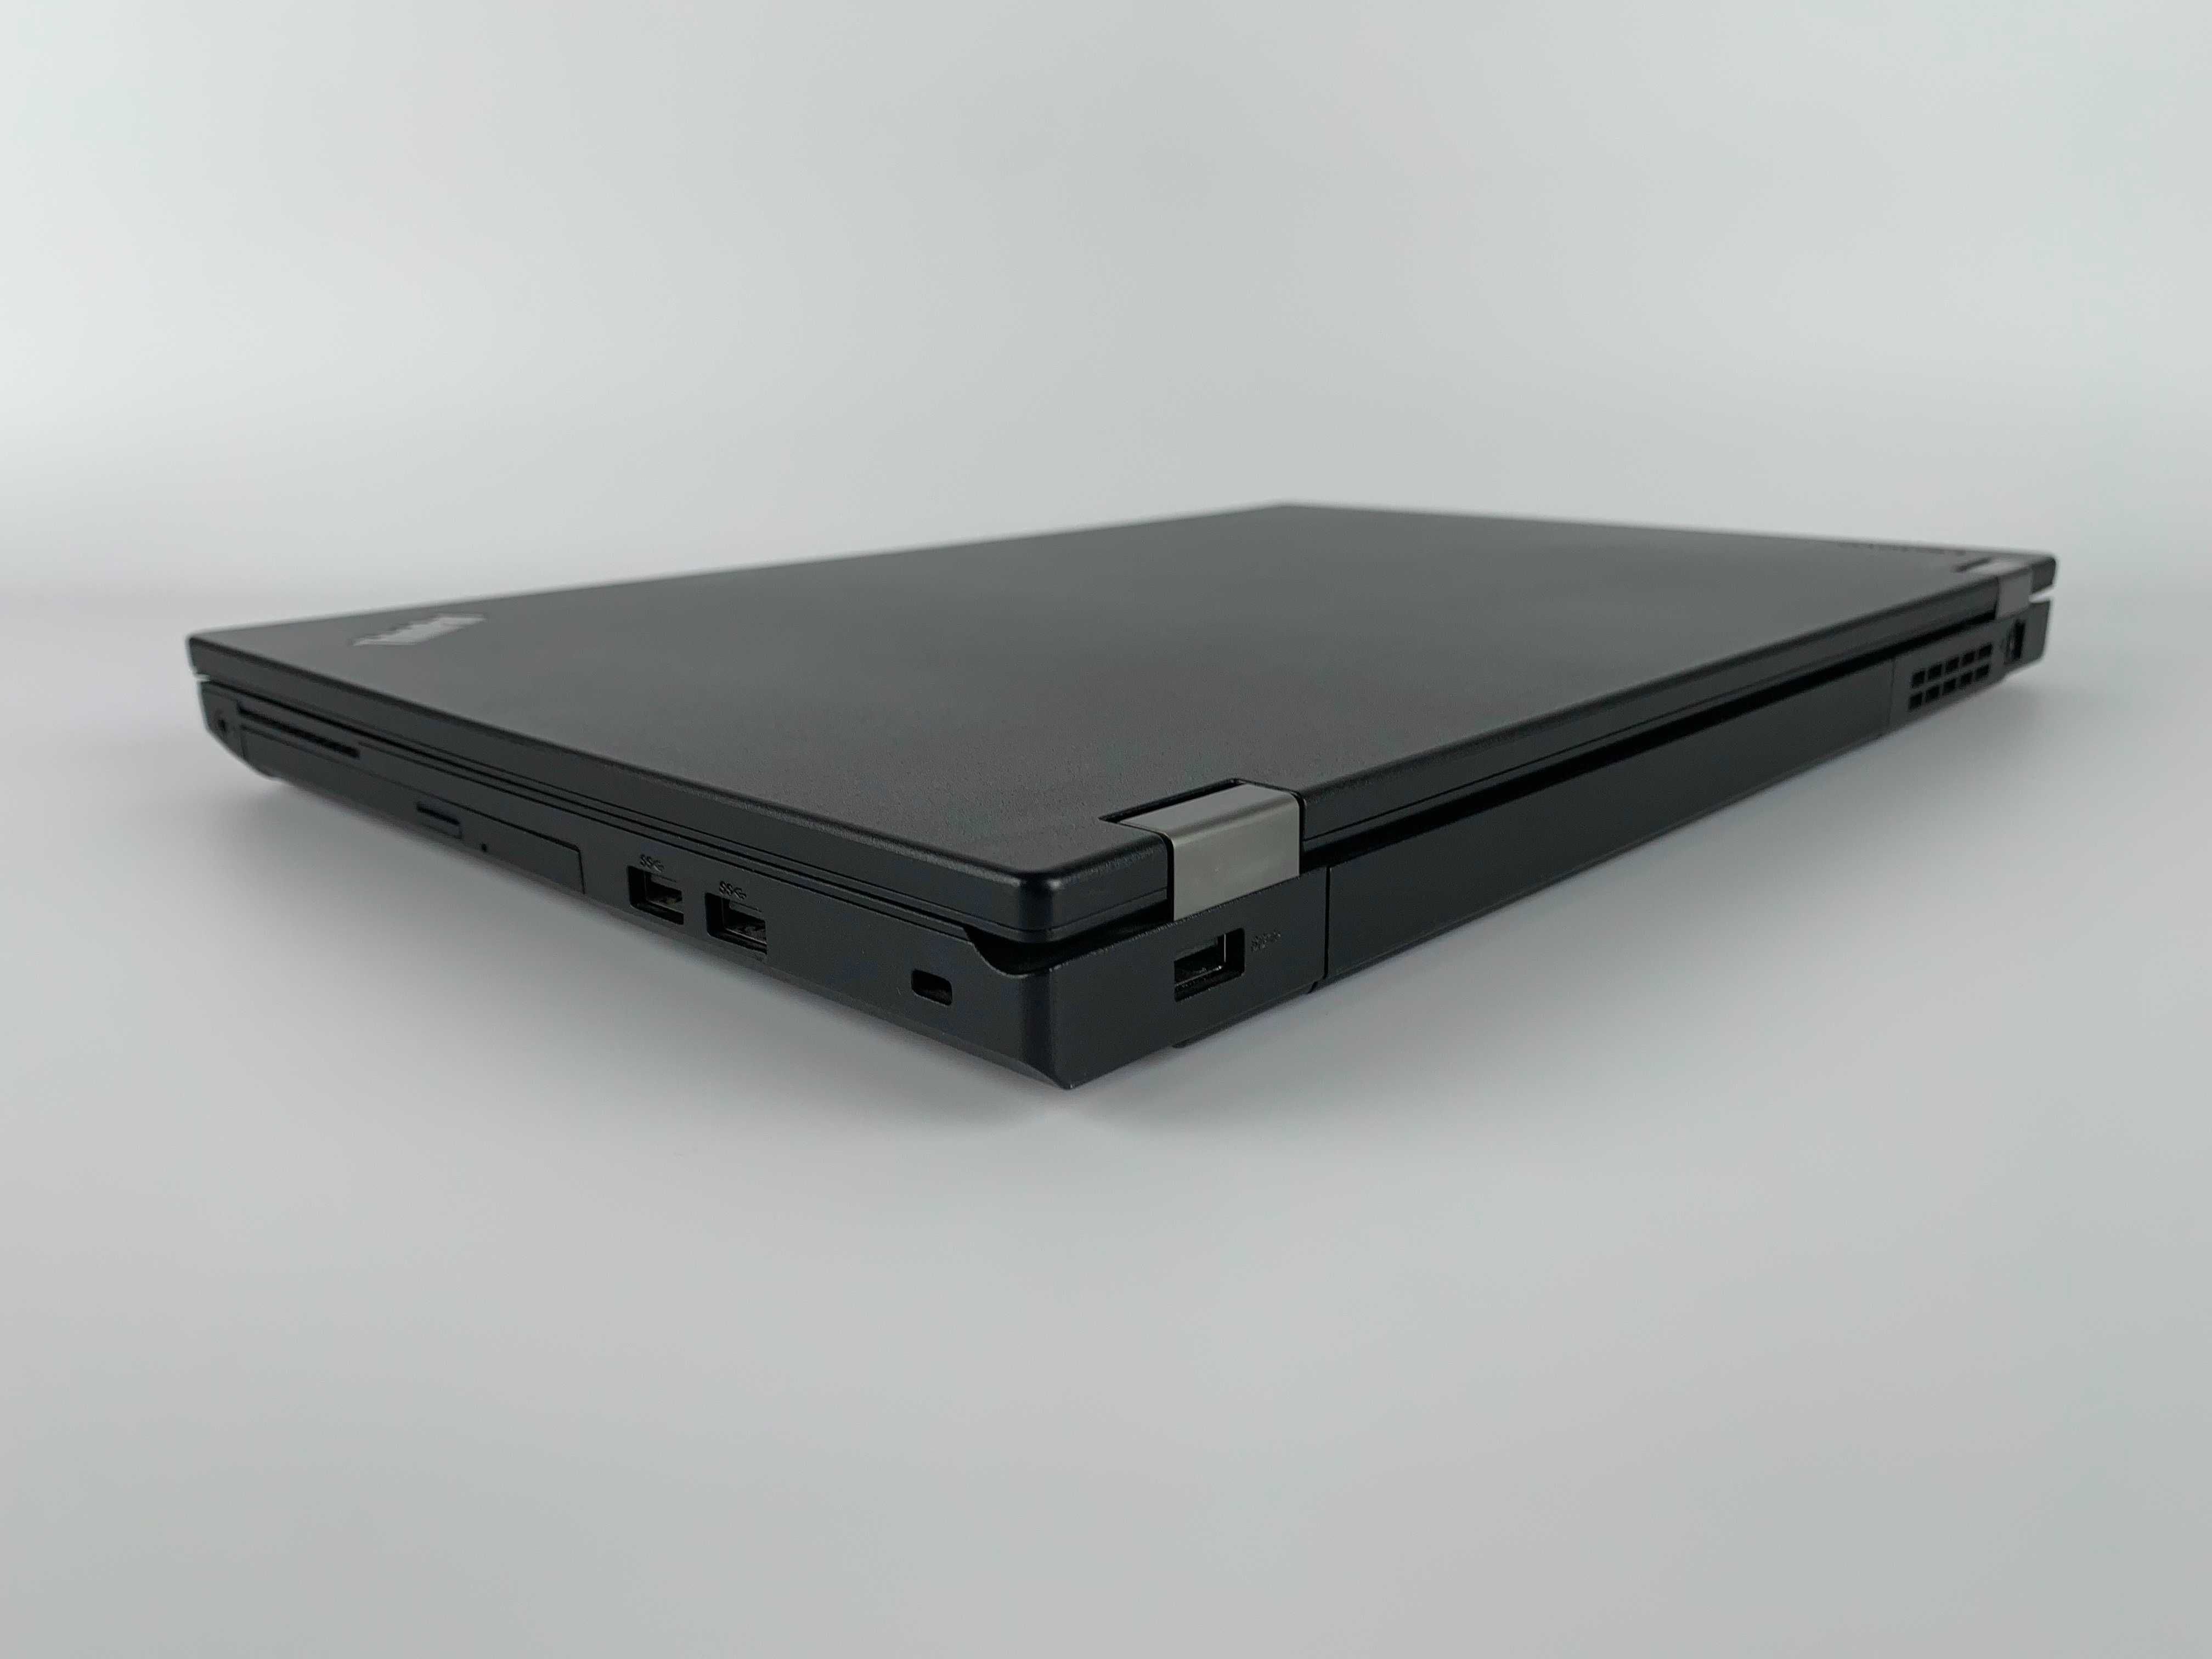 Lenovo ThinkPad L570 i5, 8gb, ssd 256, 15.6 Win10 Ноутбук 16/32/512 гб